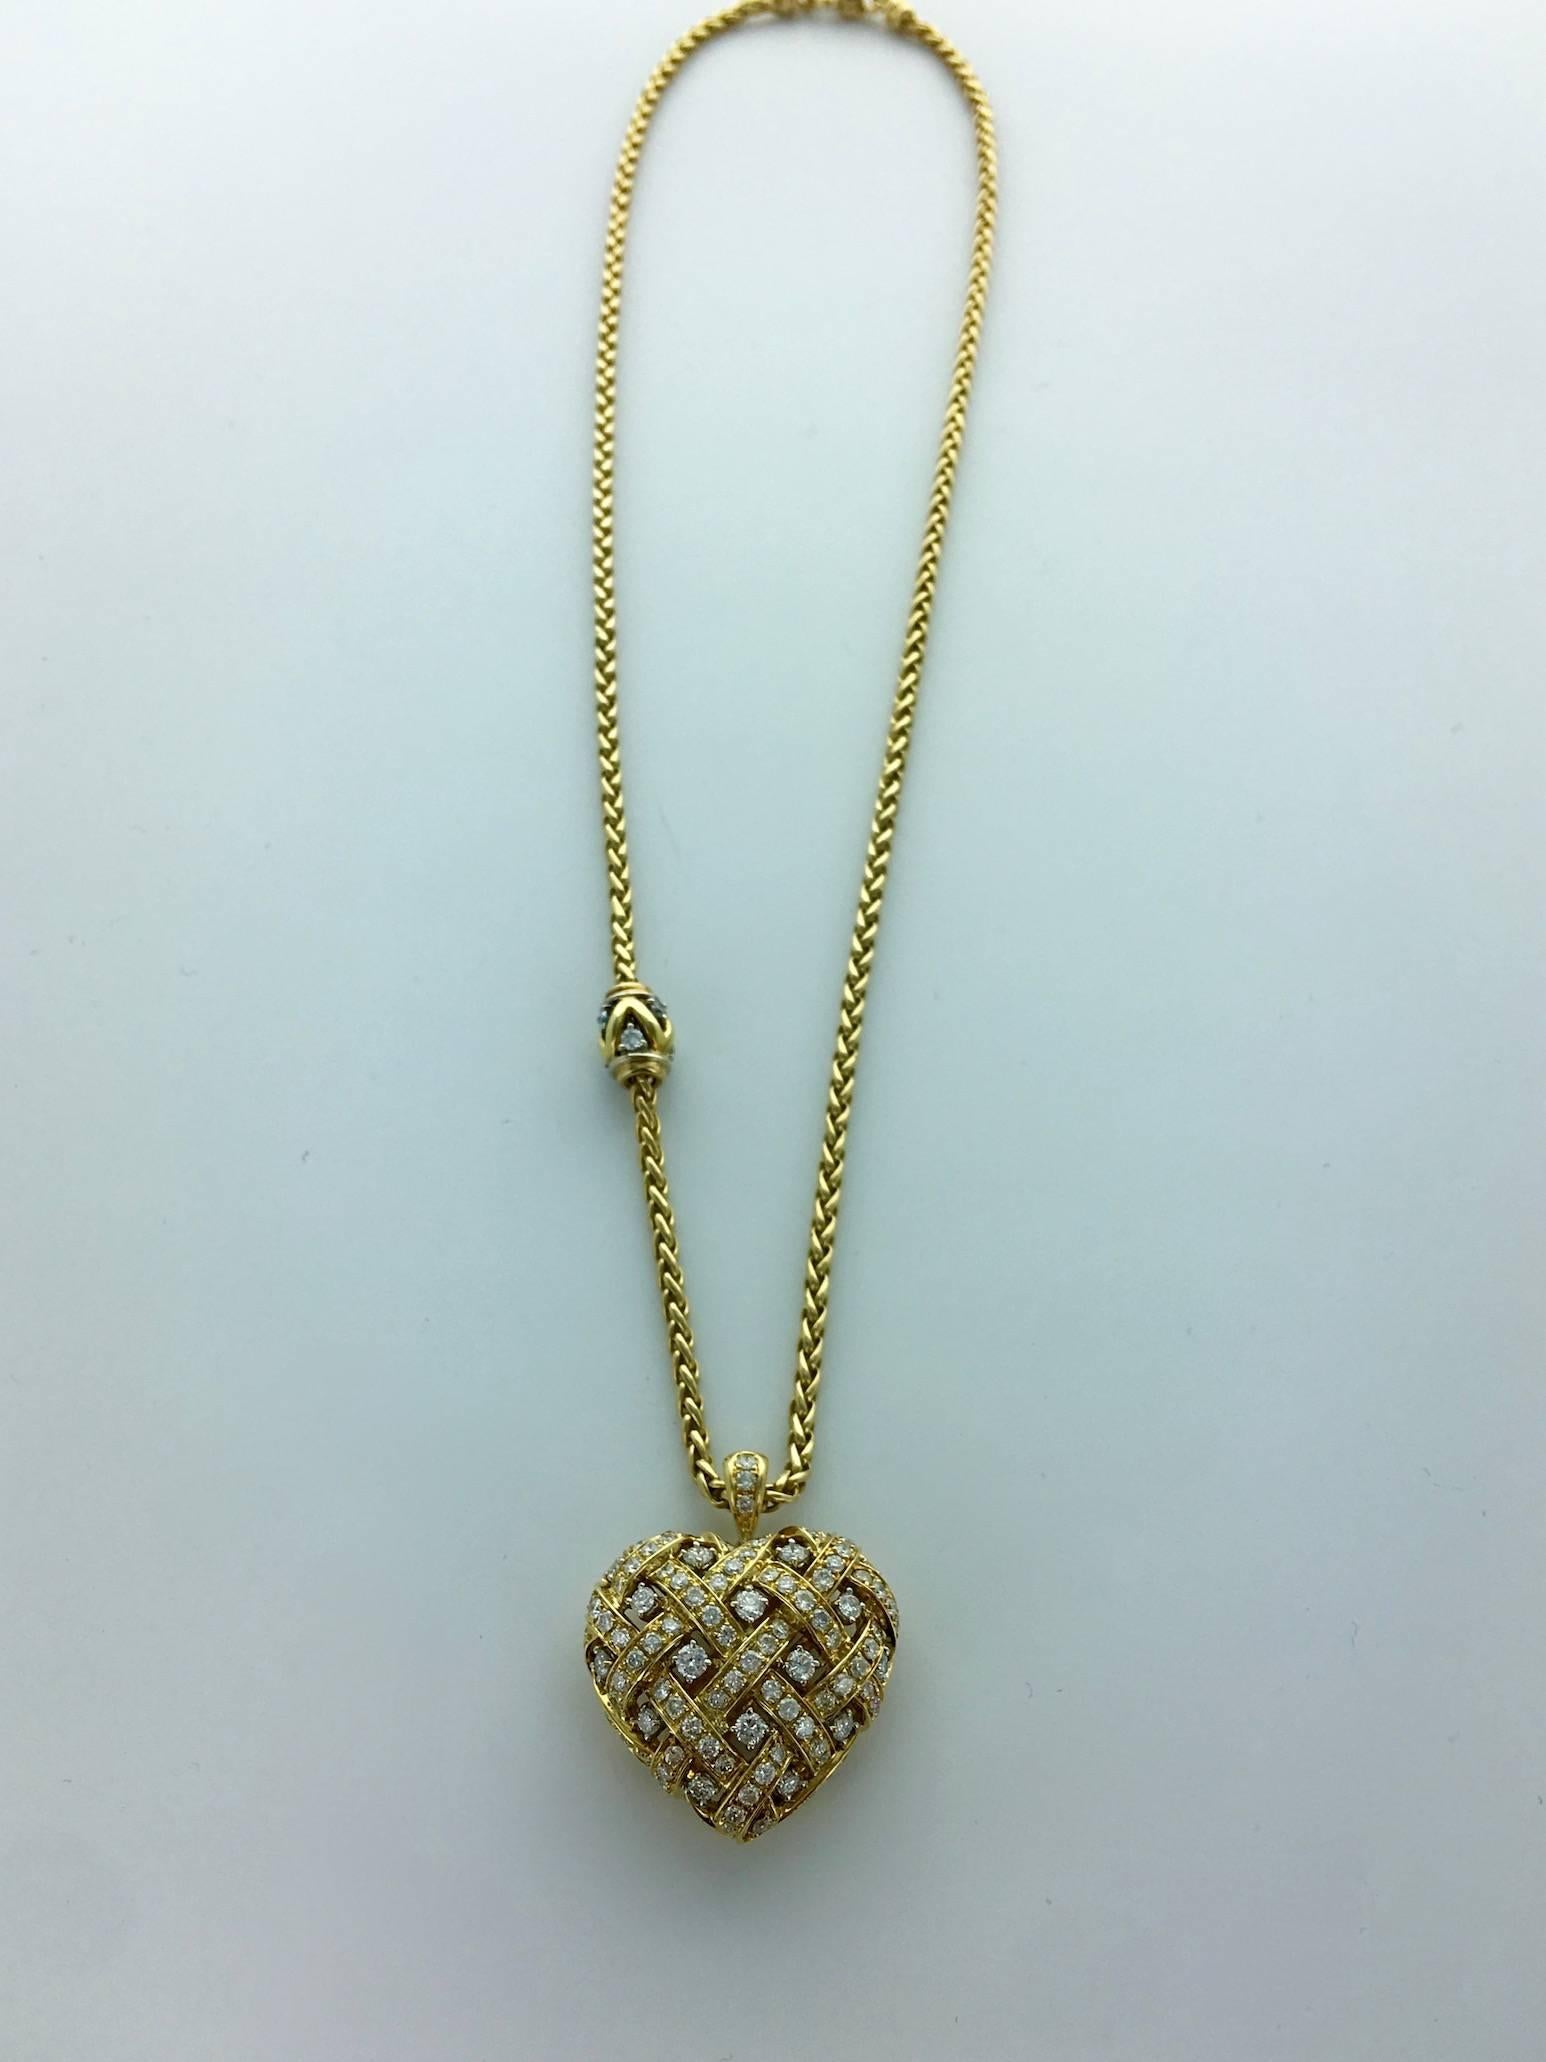 Chantecler Diamond and Gold Heart Pendant Necklace.
Italian work.
Circa 1960.